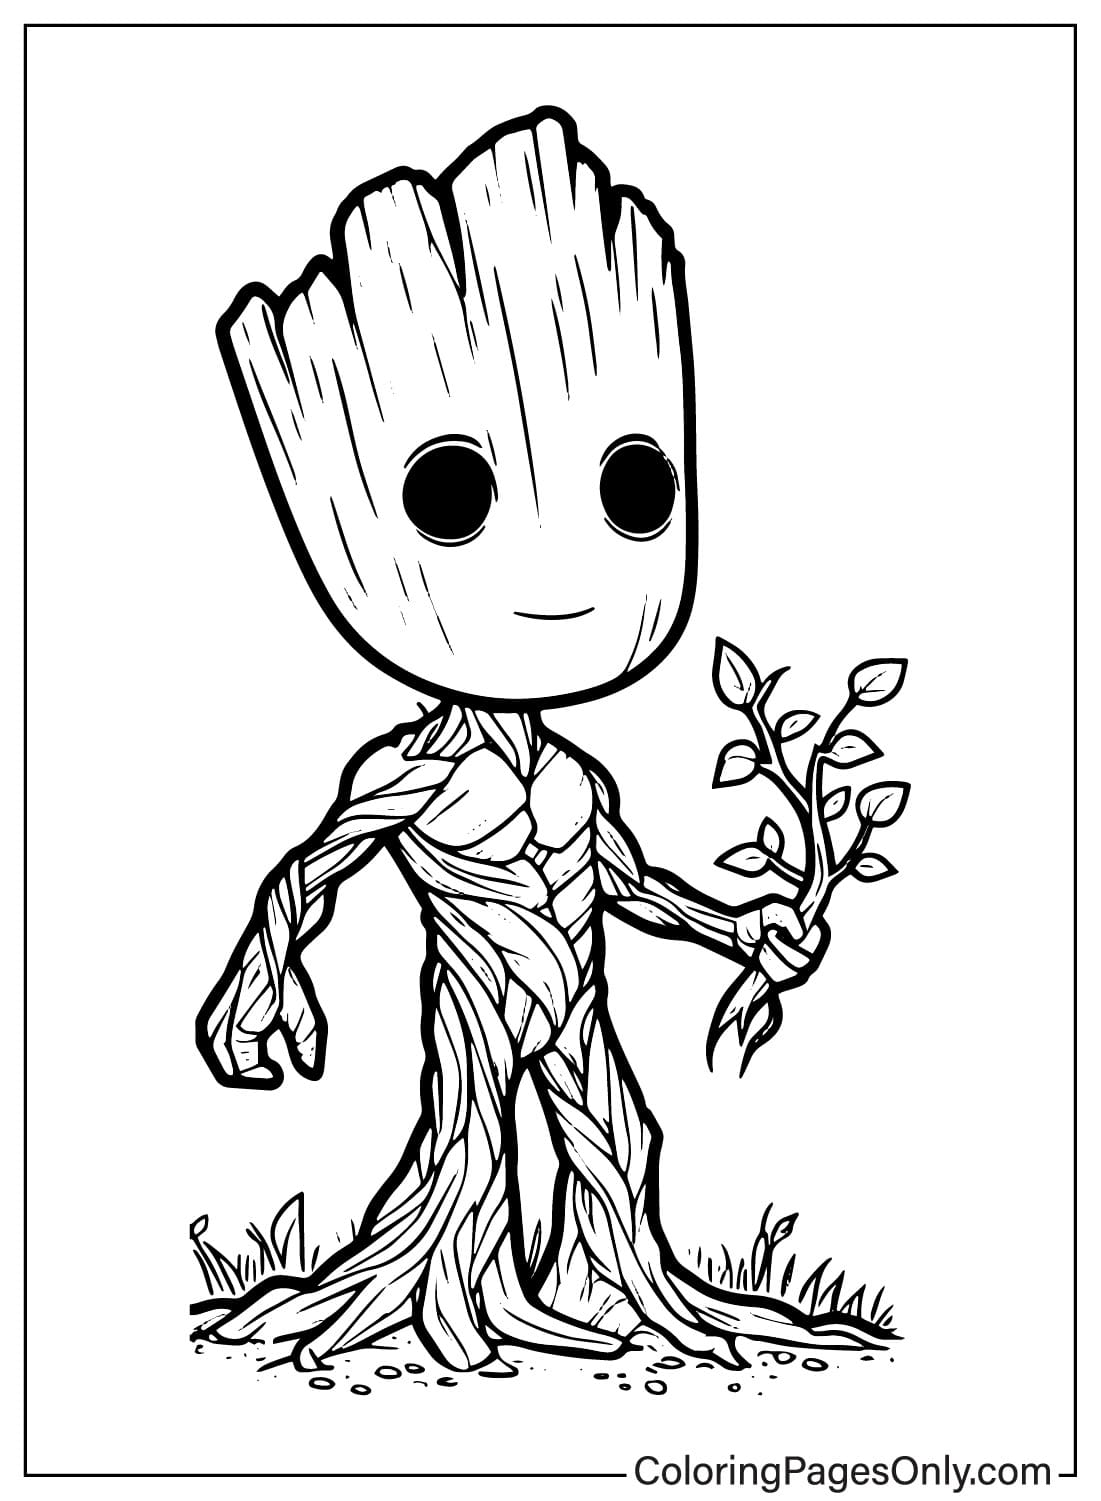 Imagens Página para colorir do Groot do Groot